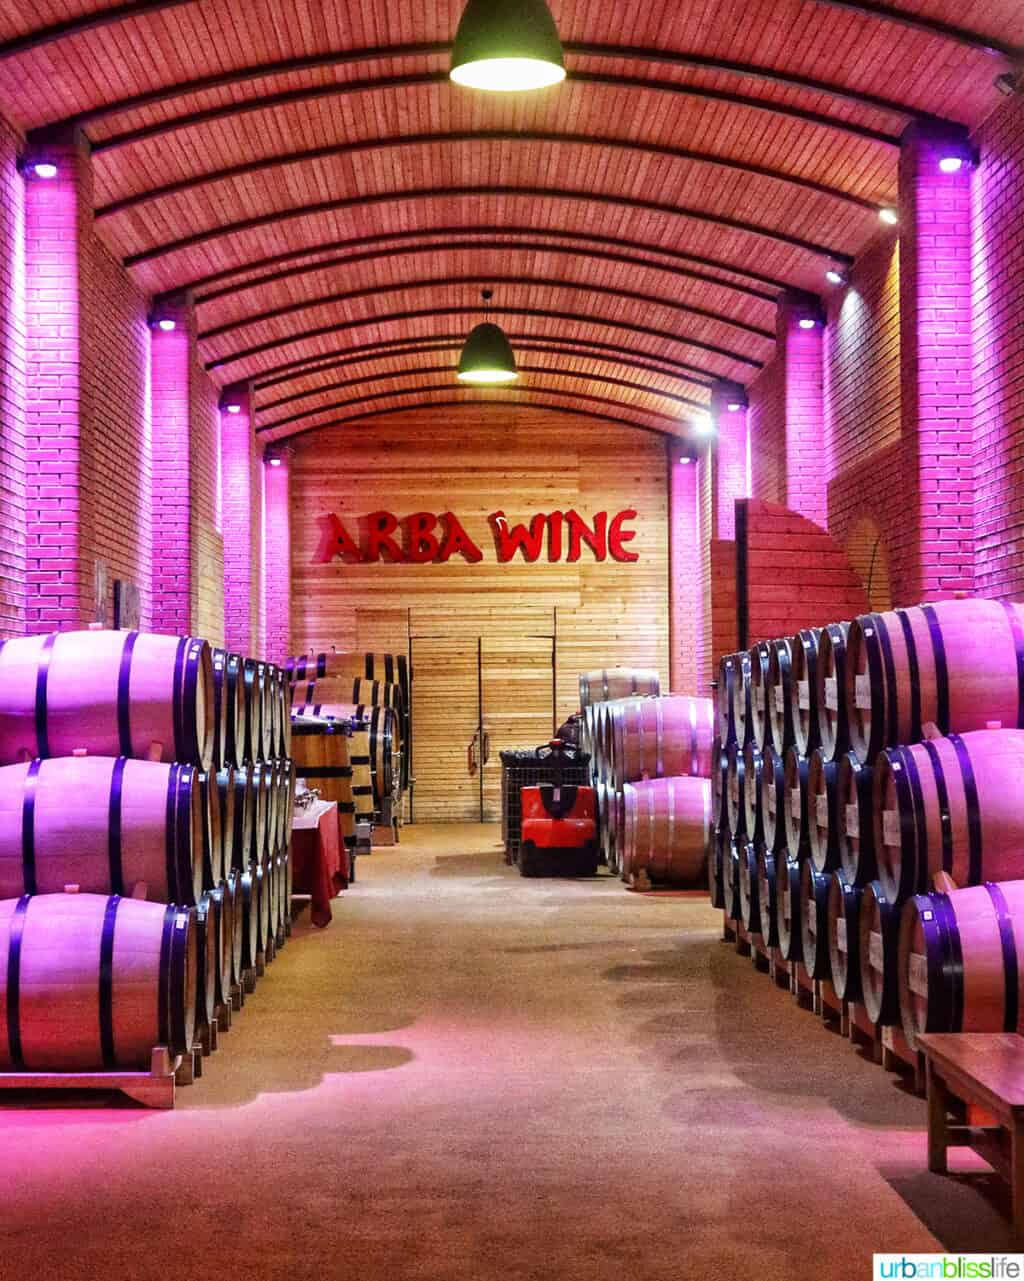 Wine barrels in the hallway of Arba Winery in Kazakhstan.